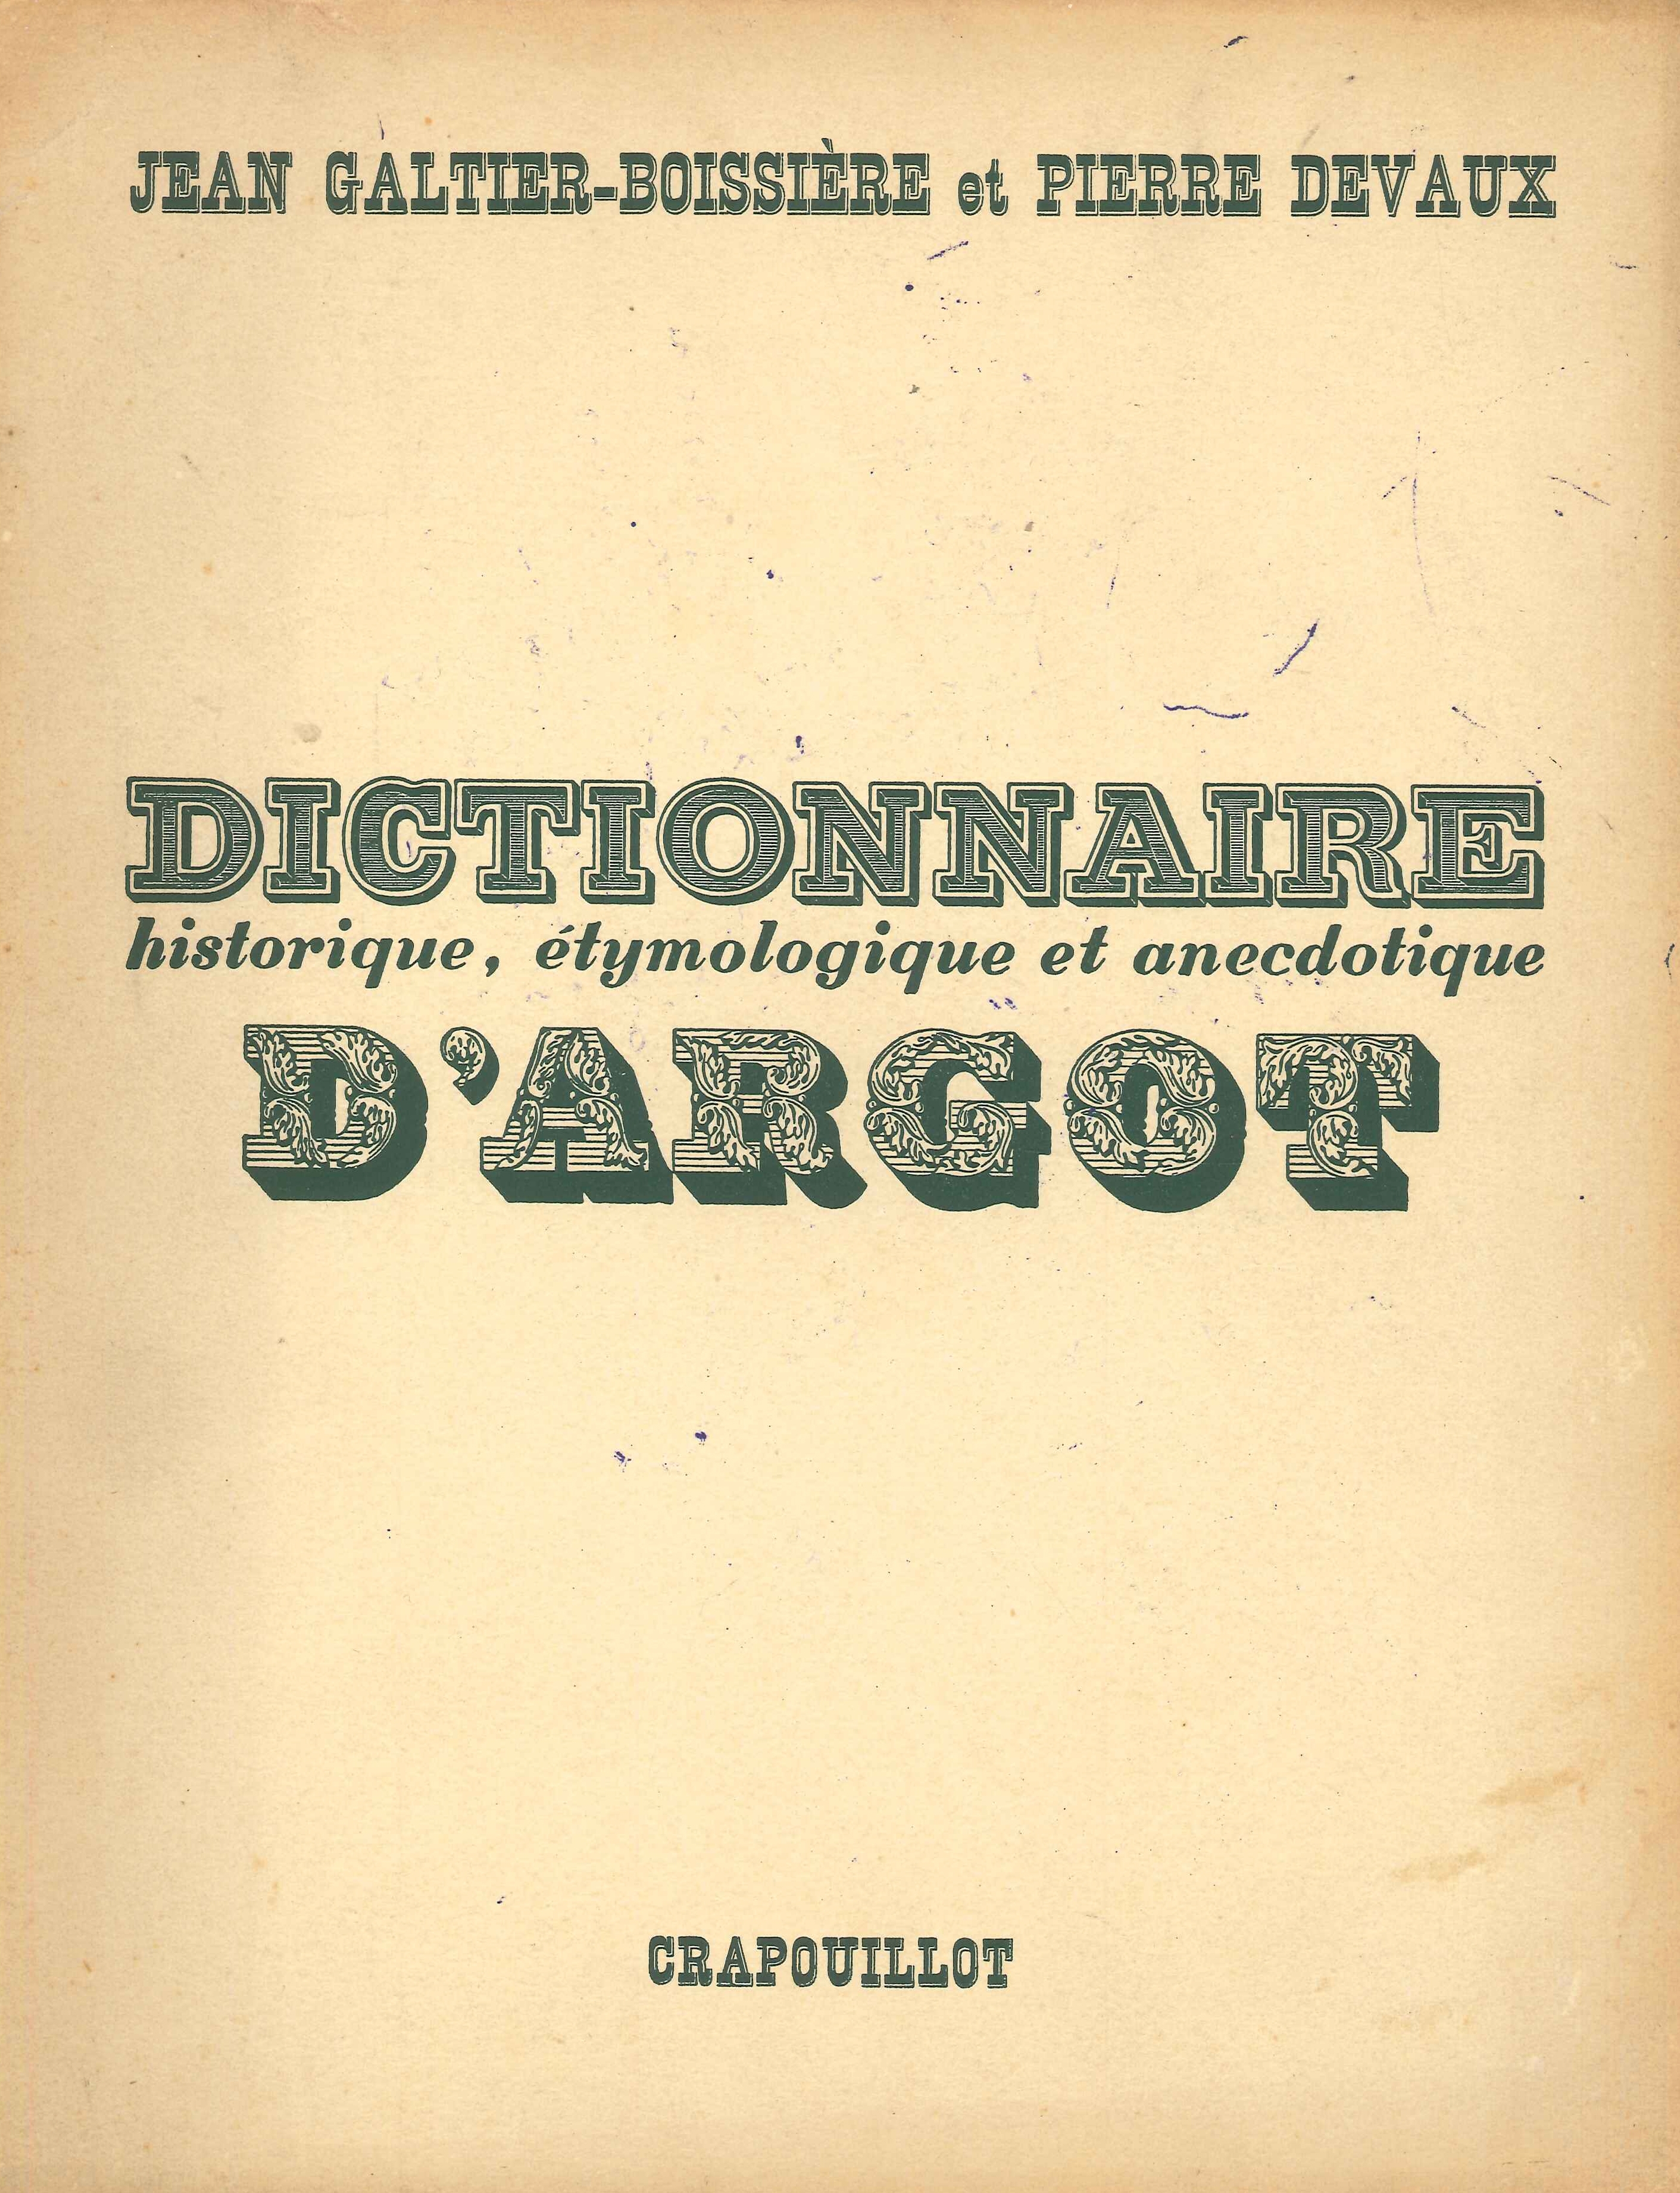 Dictionnaire historique, etymologique et anecdotique d'argot - [Crapouillot] - Photo 1/1